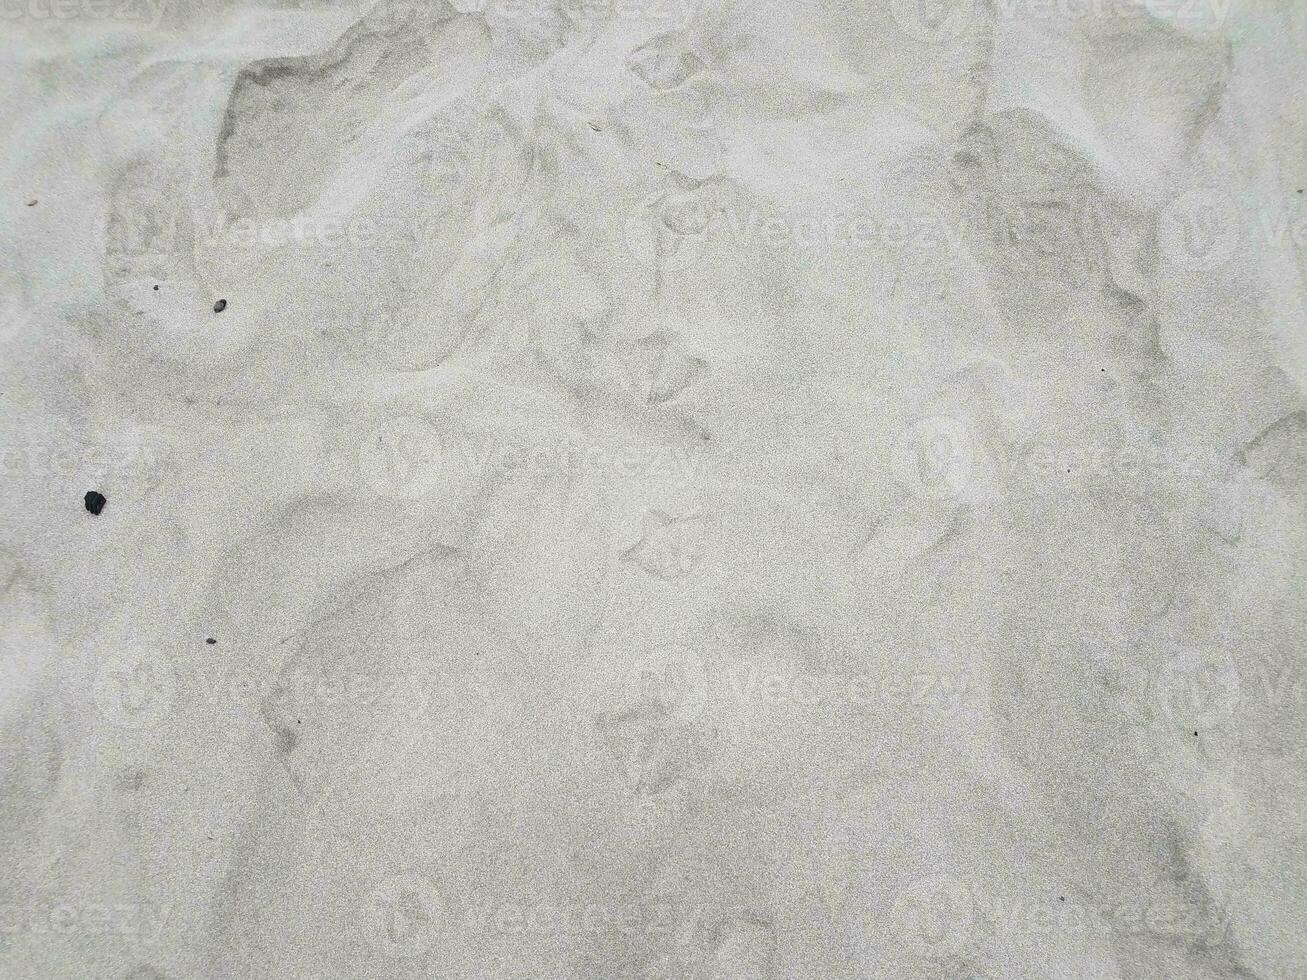 Empreintes ou traces d'oiseaux sur du sable sec photo